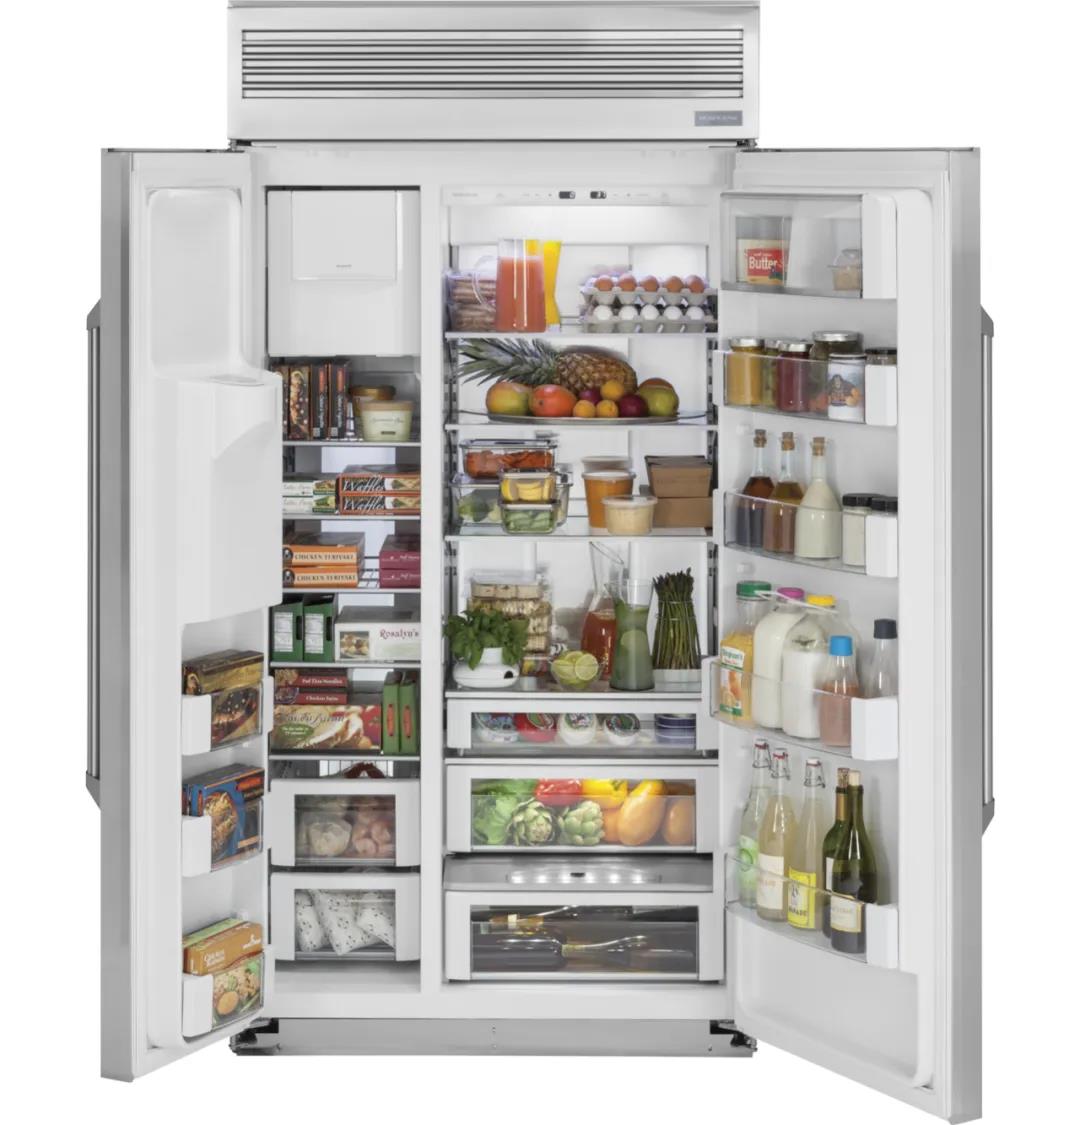 “囤货”式购物,需要一款超级大的GE冰箱来进行储藏和分类